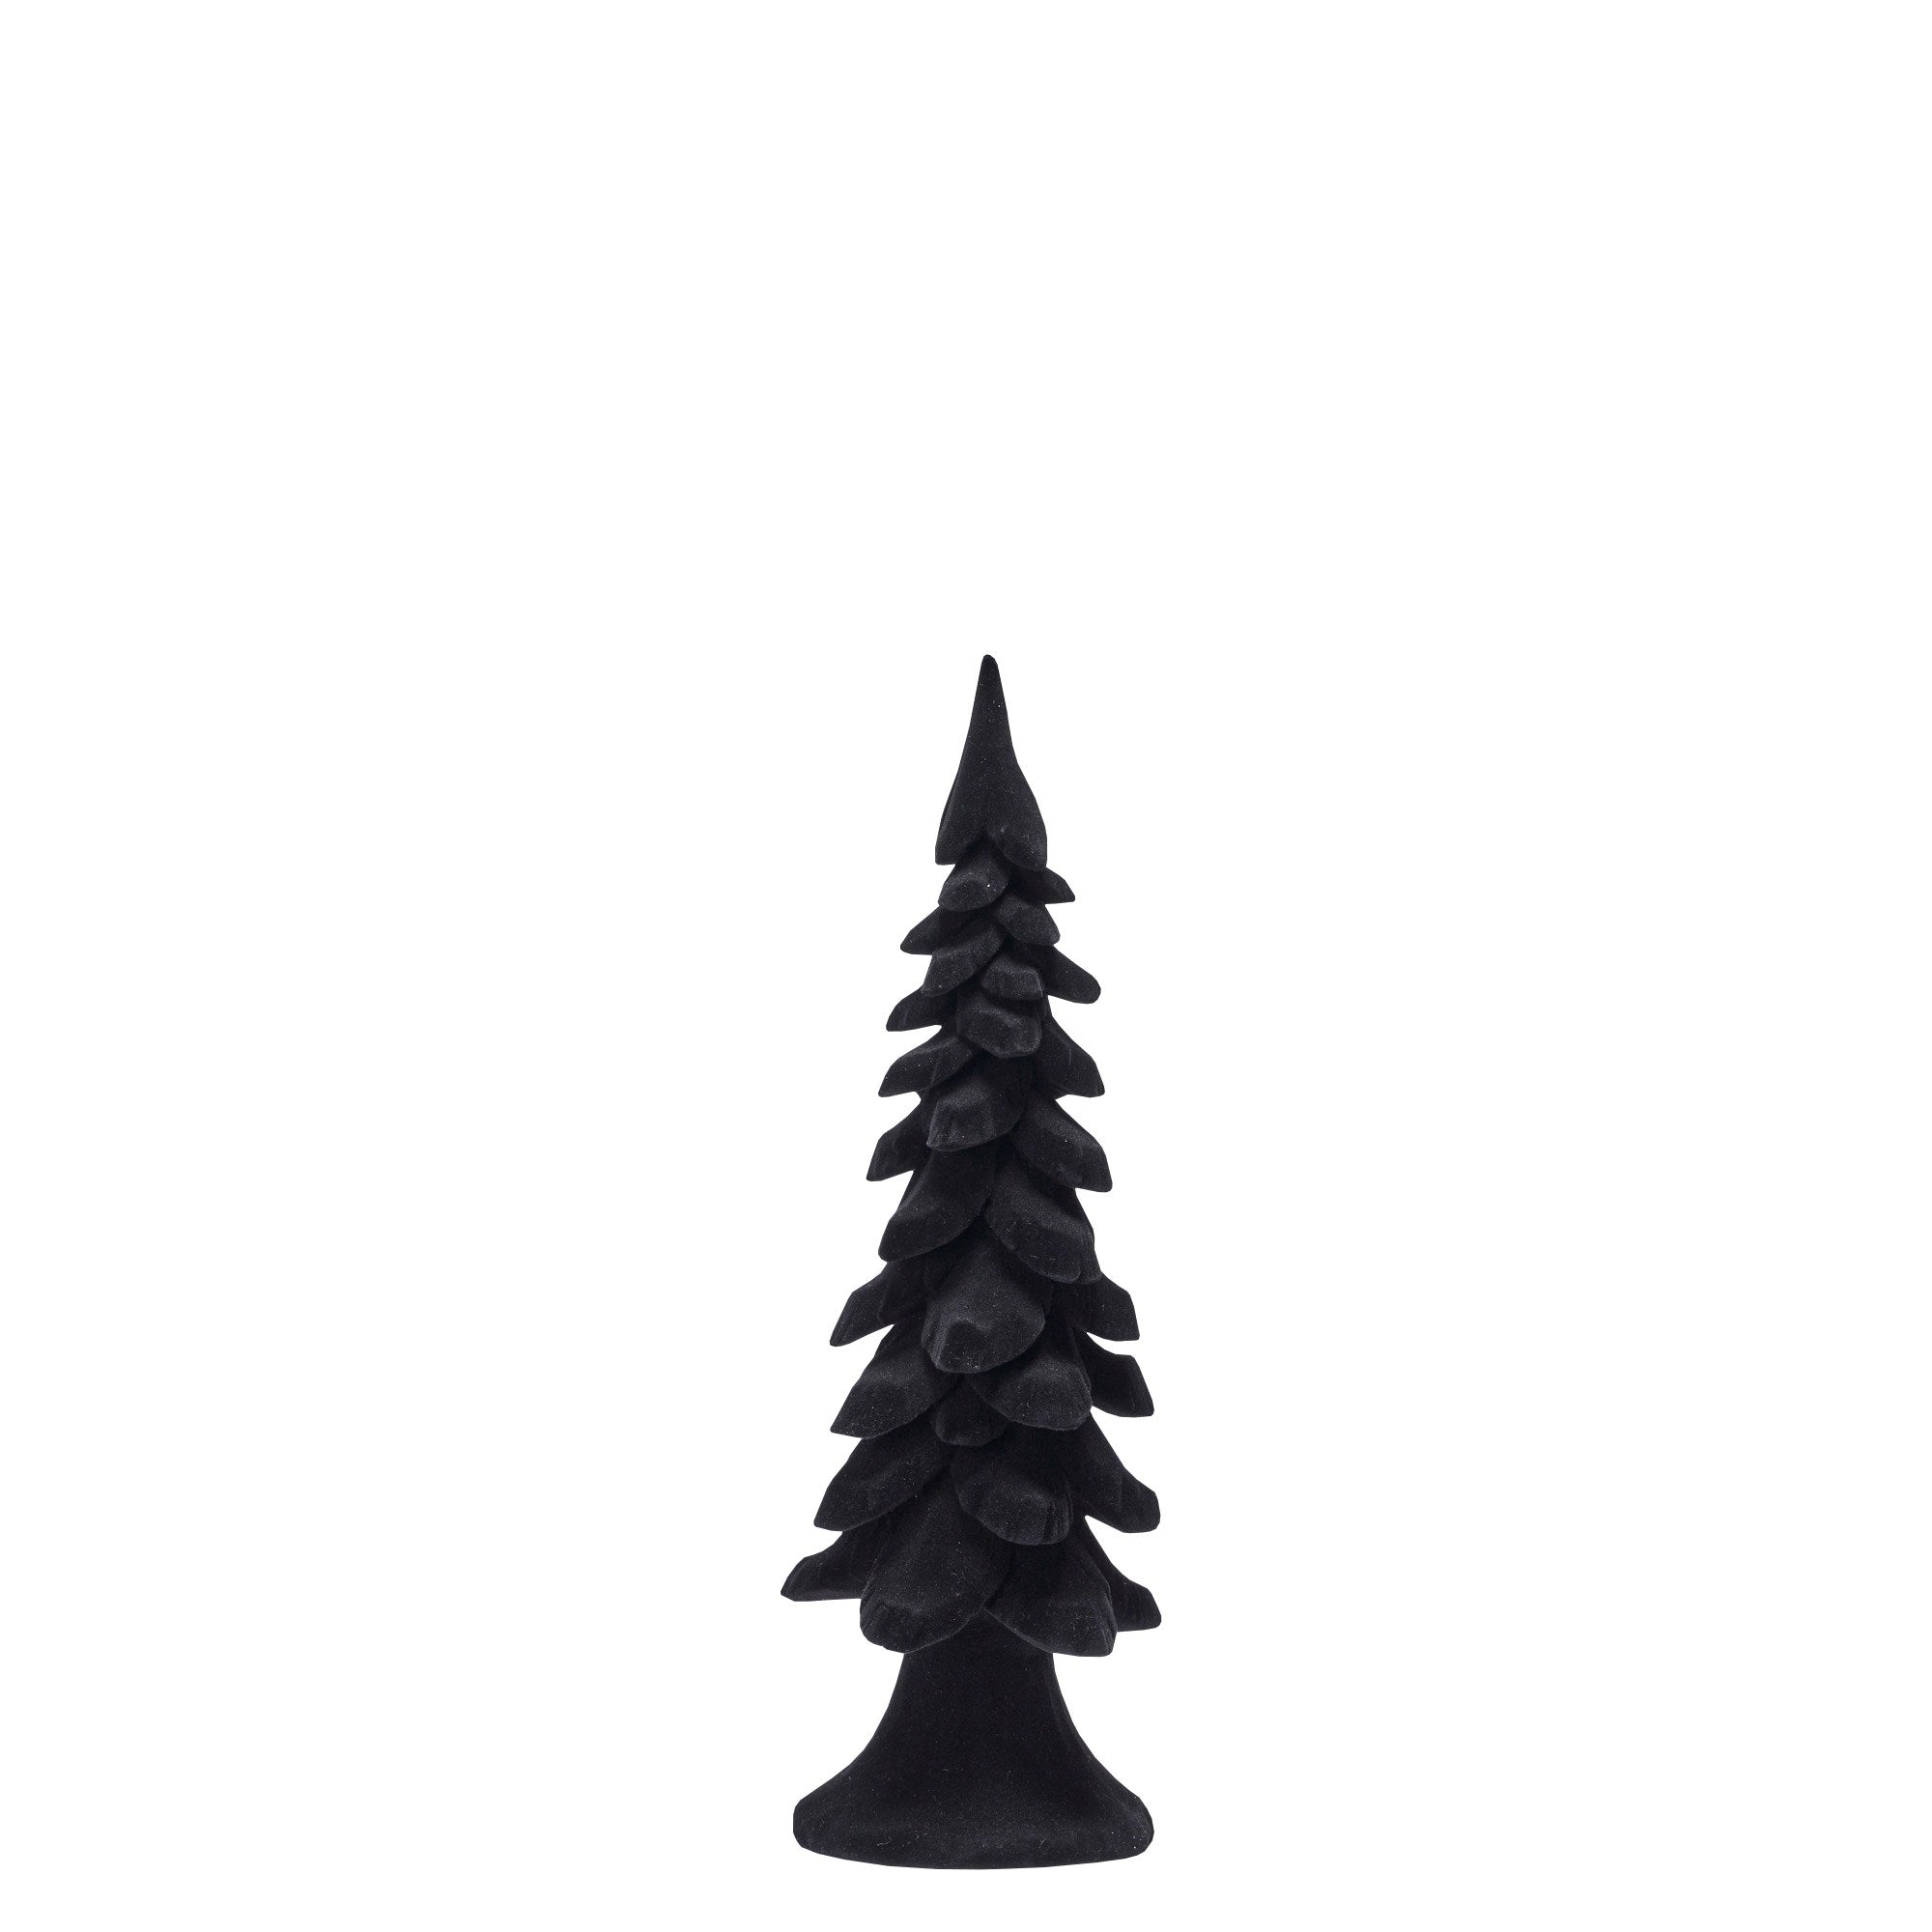 Serafina Weihnachtsbaum von Lene Bjerre schwarz